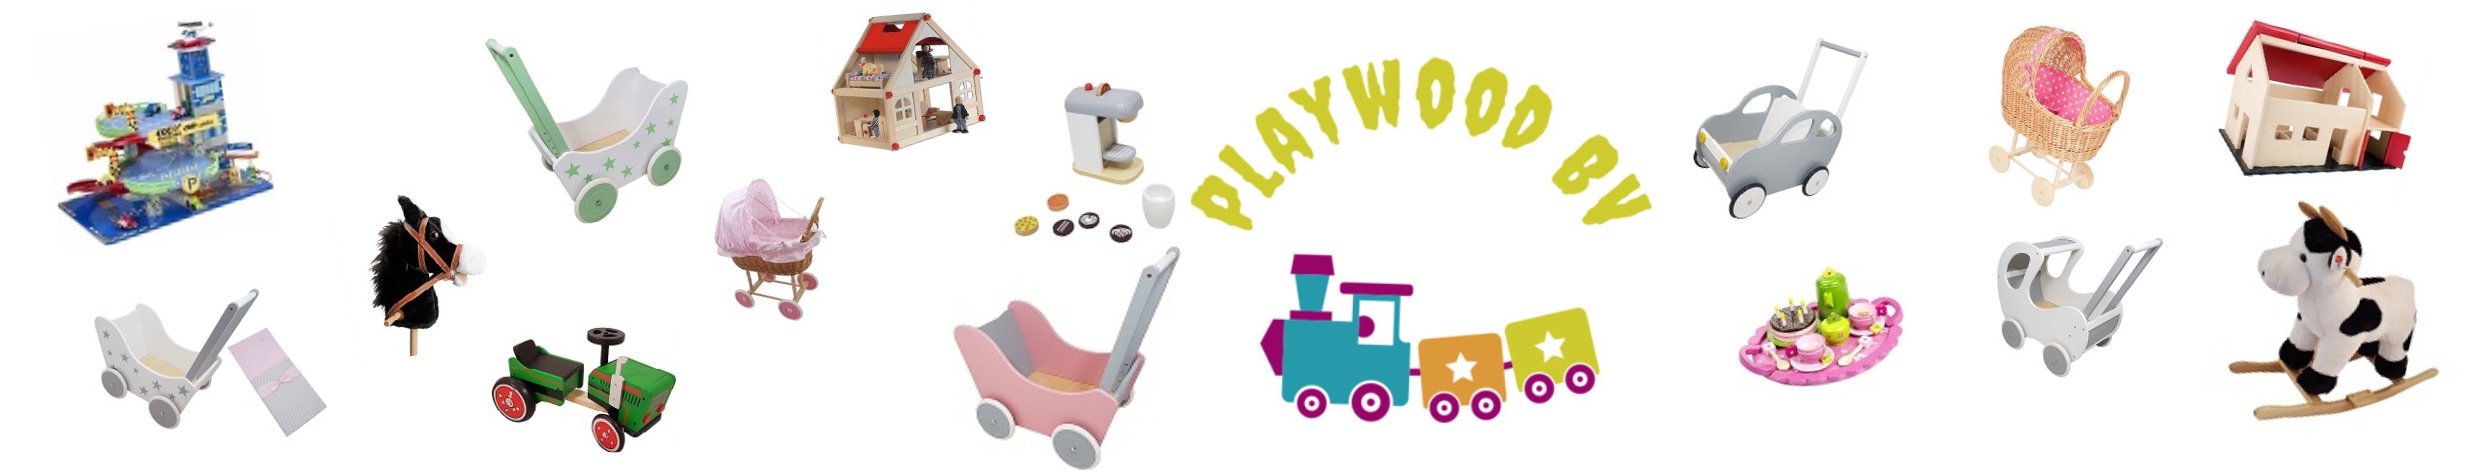 Playwood groothandel in houten speelgoed; hobbelpaarden,stokpaarden, loopfietsen, fornuisjes,winkeltjes etc.